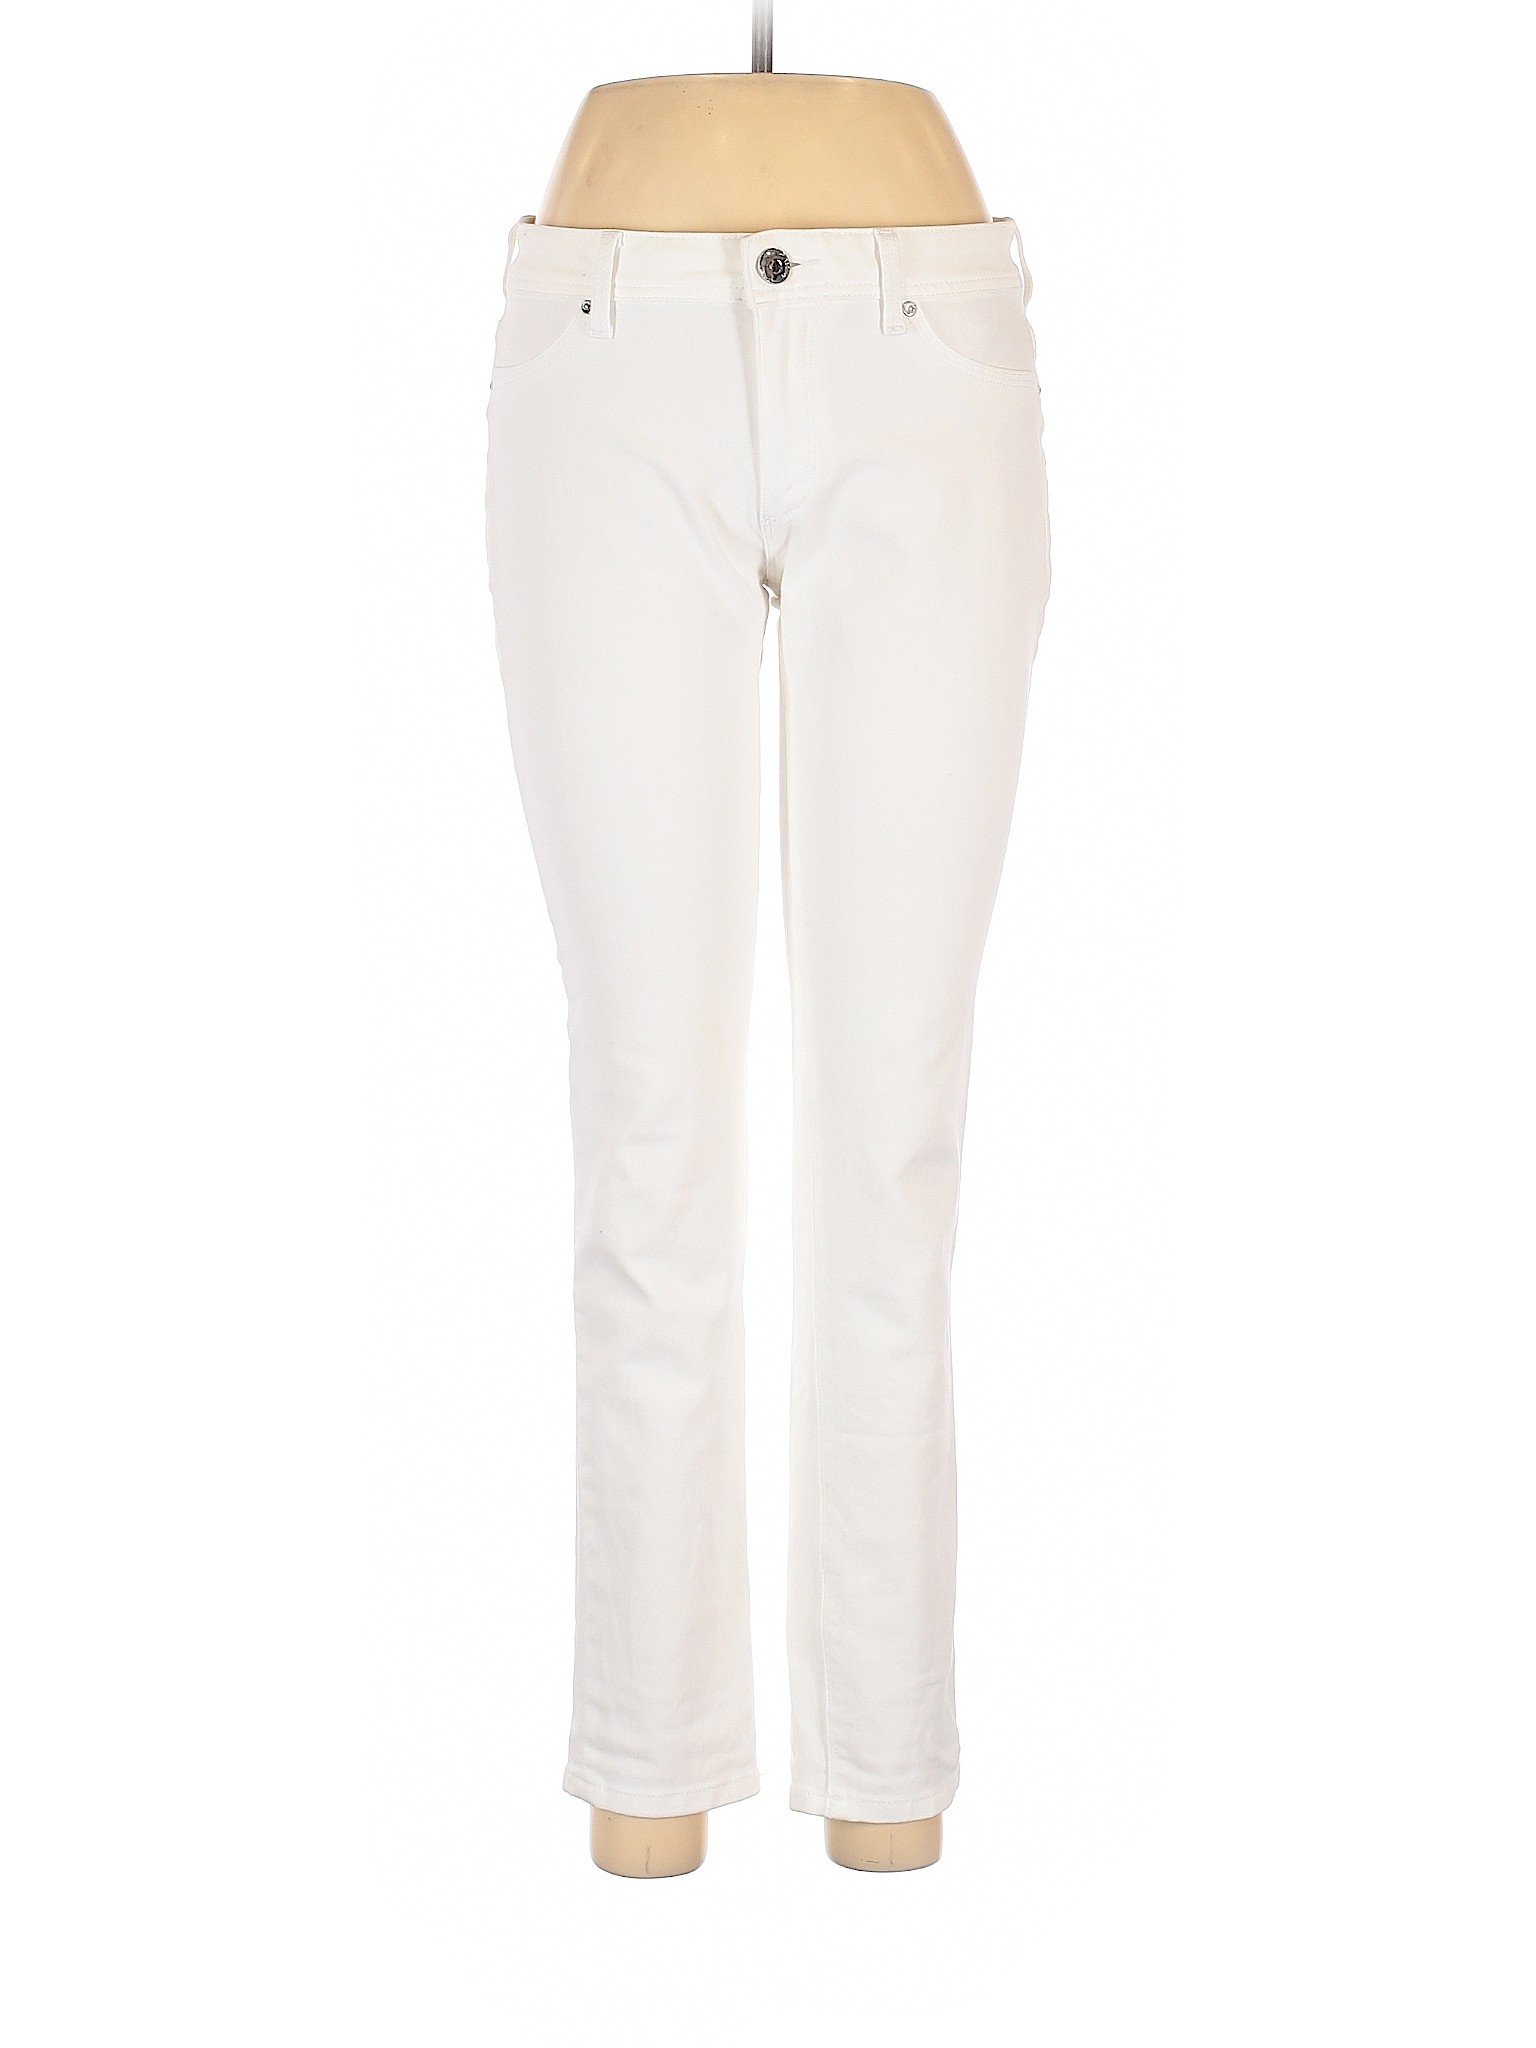 DL1961 Women White Jeans 29W | eBay